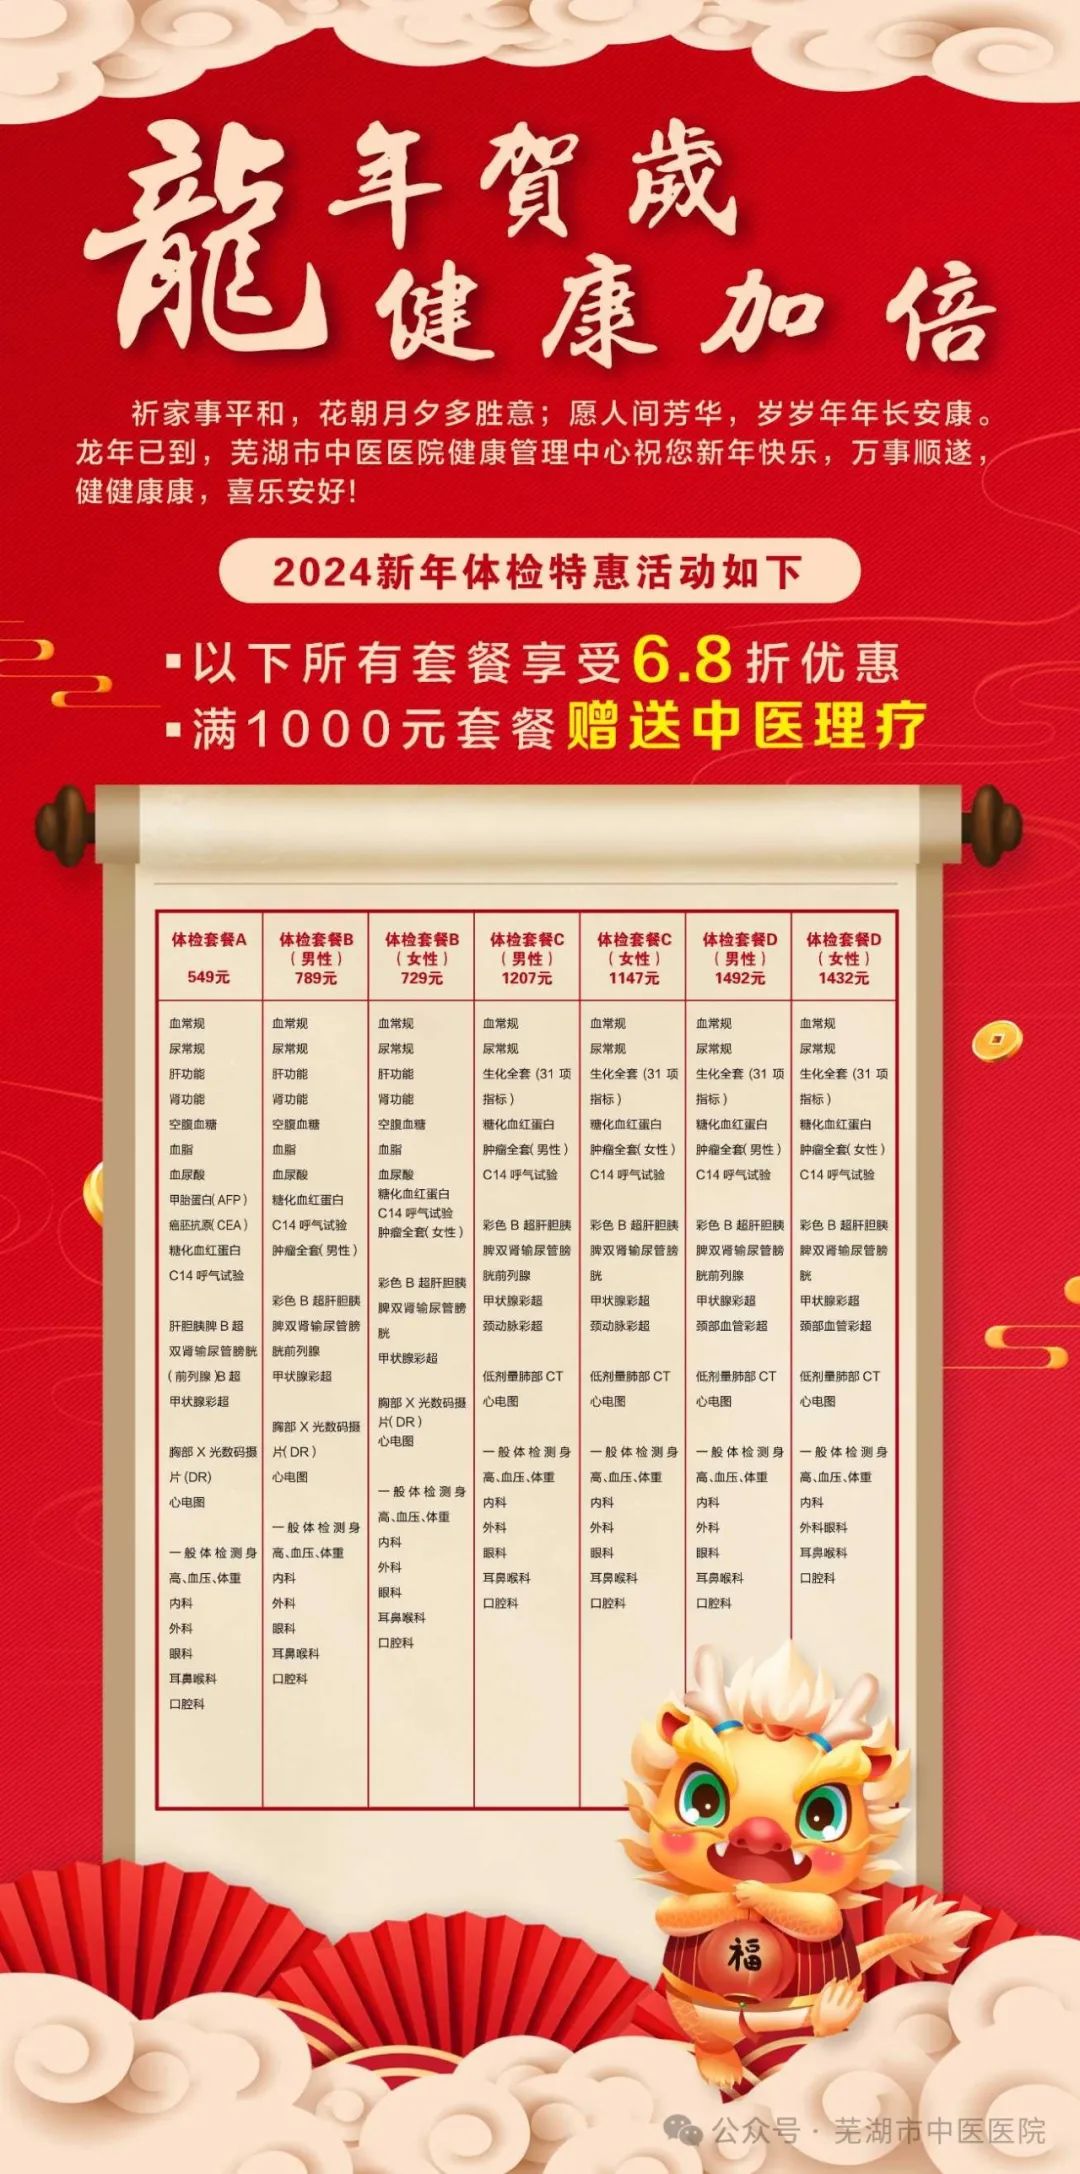 龙年贺岁 健康加倍——芜湖市中医医院2024新年体检特惠活动来啦(图1)